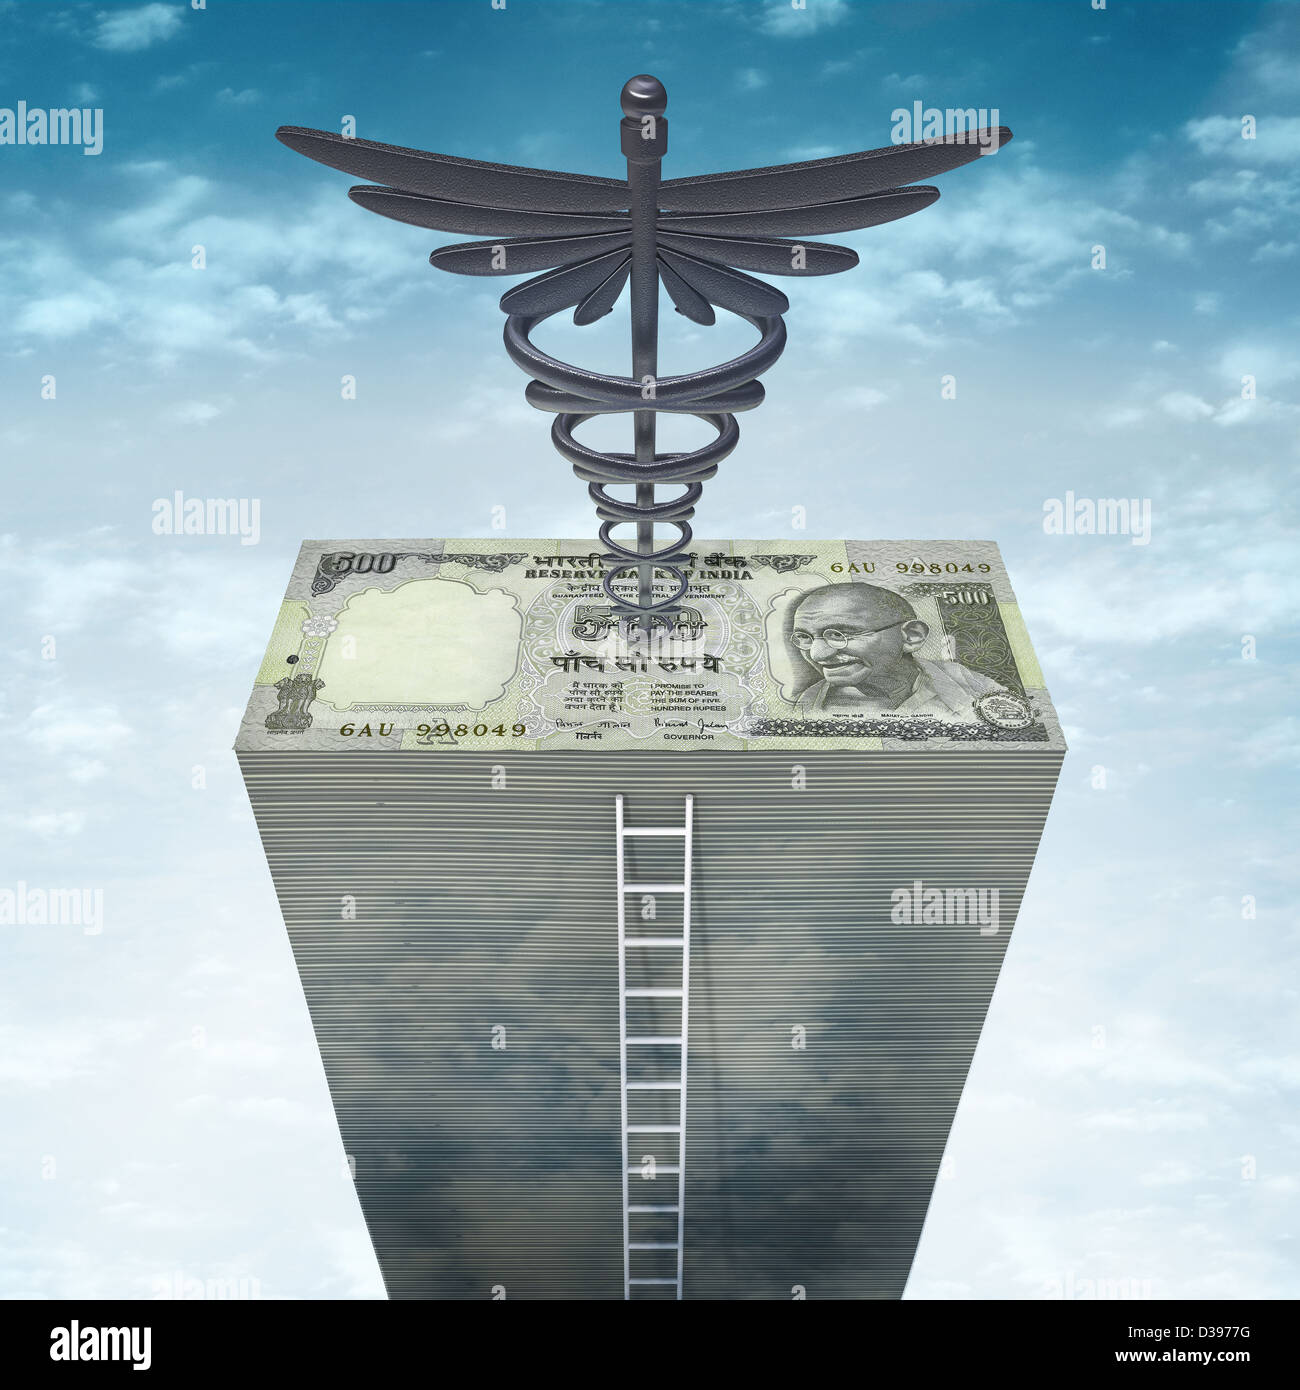 Image d'illustration de pile de papier-monnaie avec échelle et symbole médical sur le haut représentant de l'assurance-santé Banque D'Images